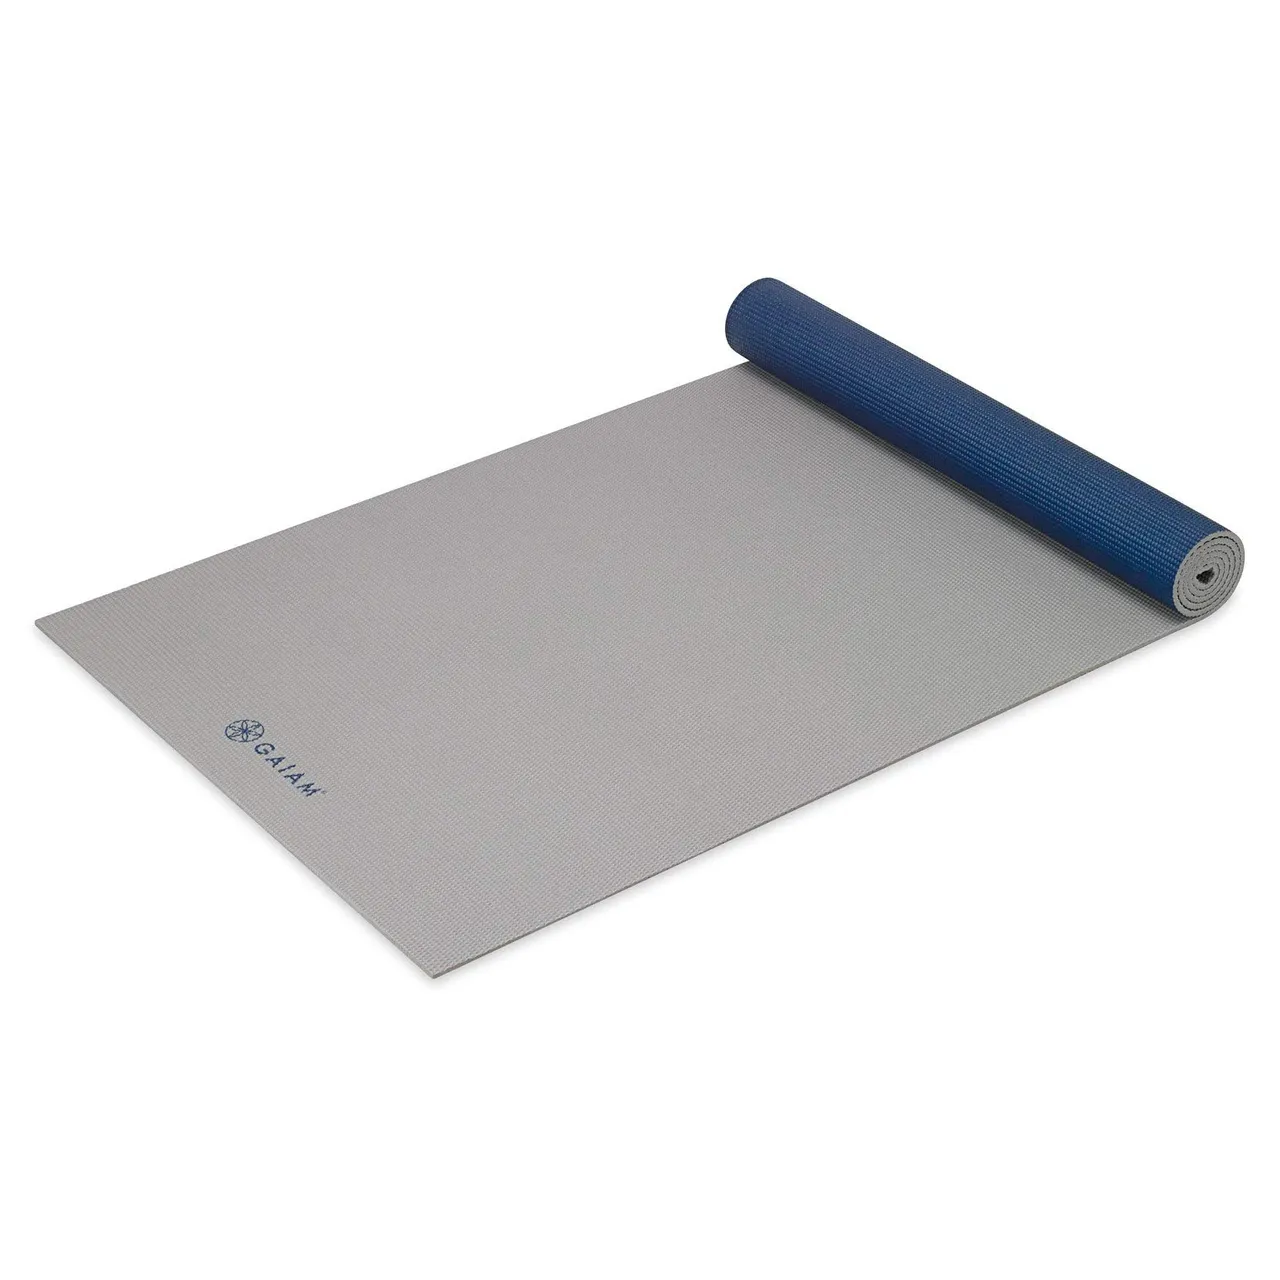 Gaiam Yoga Mat Premium Solid Color Reversible Non Slip